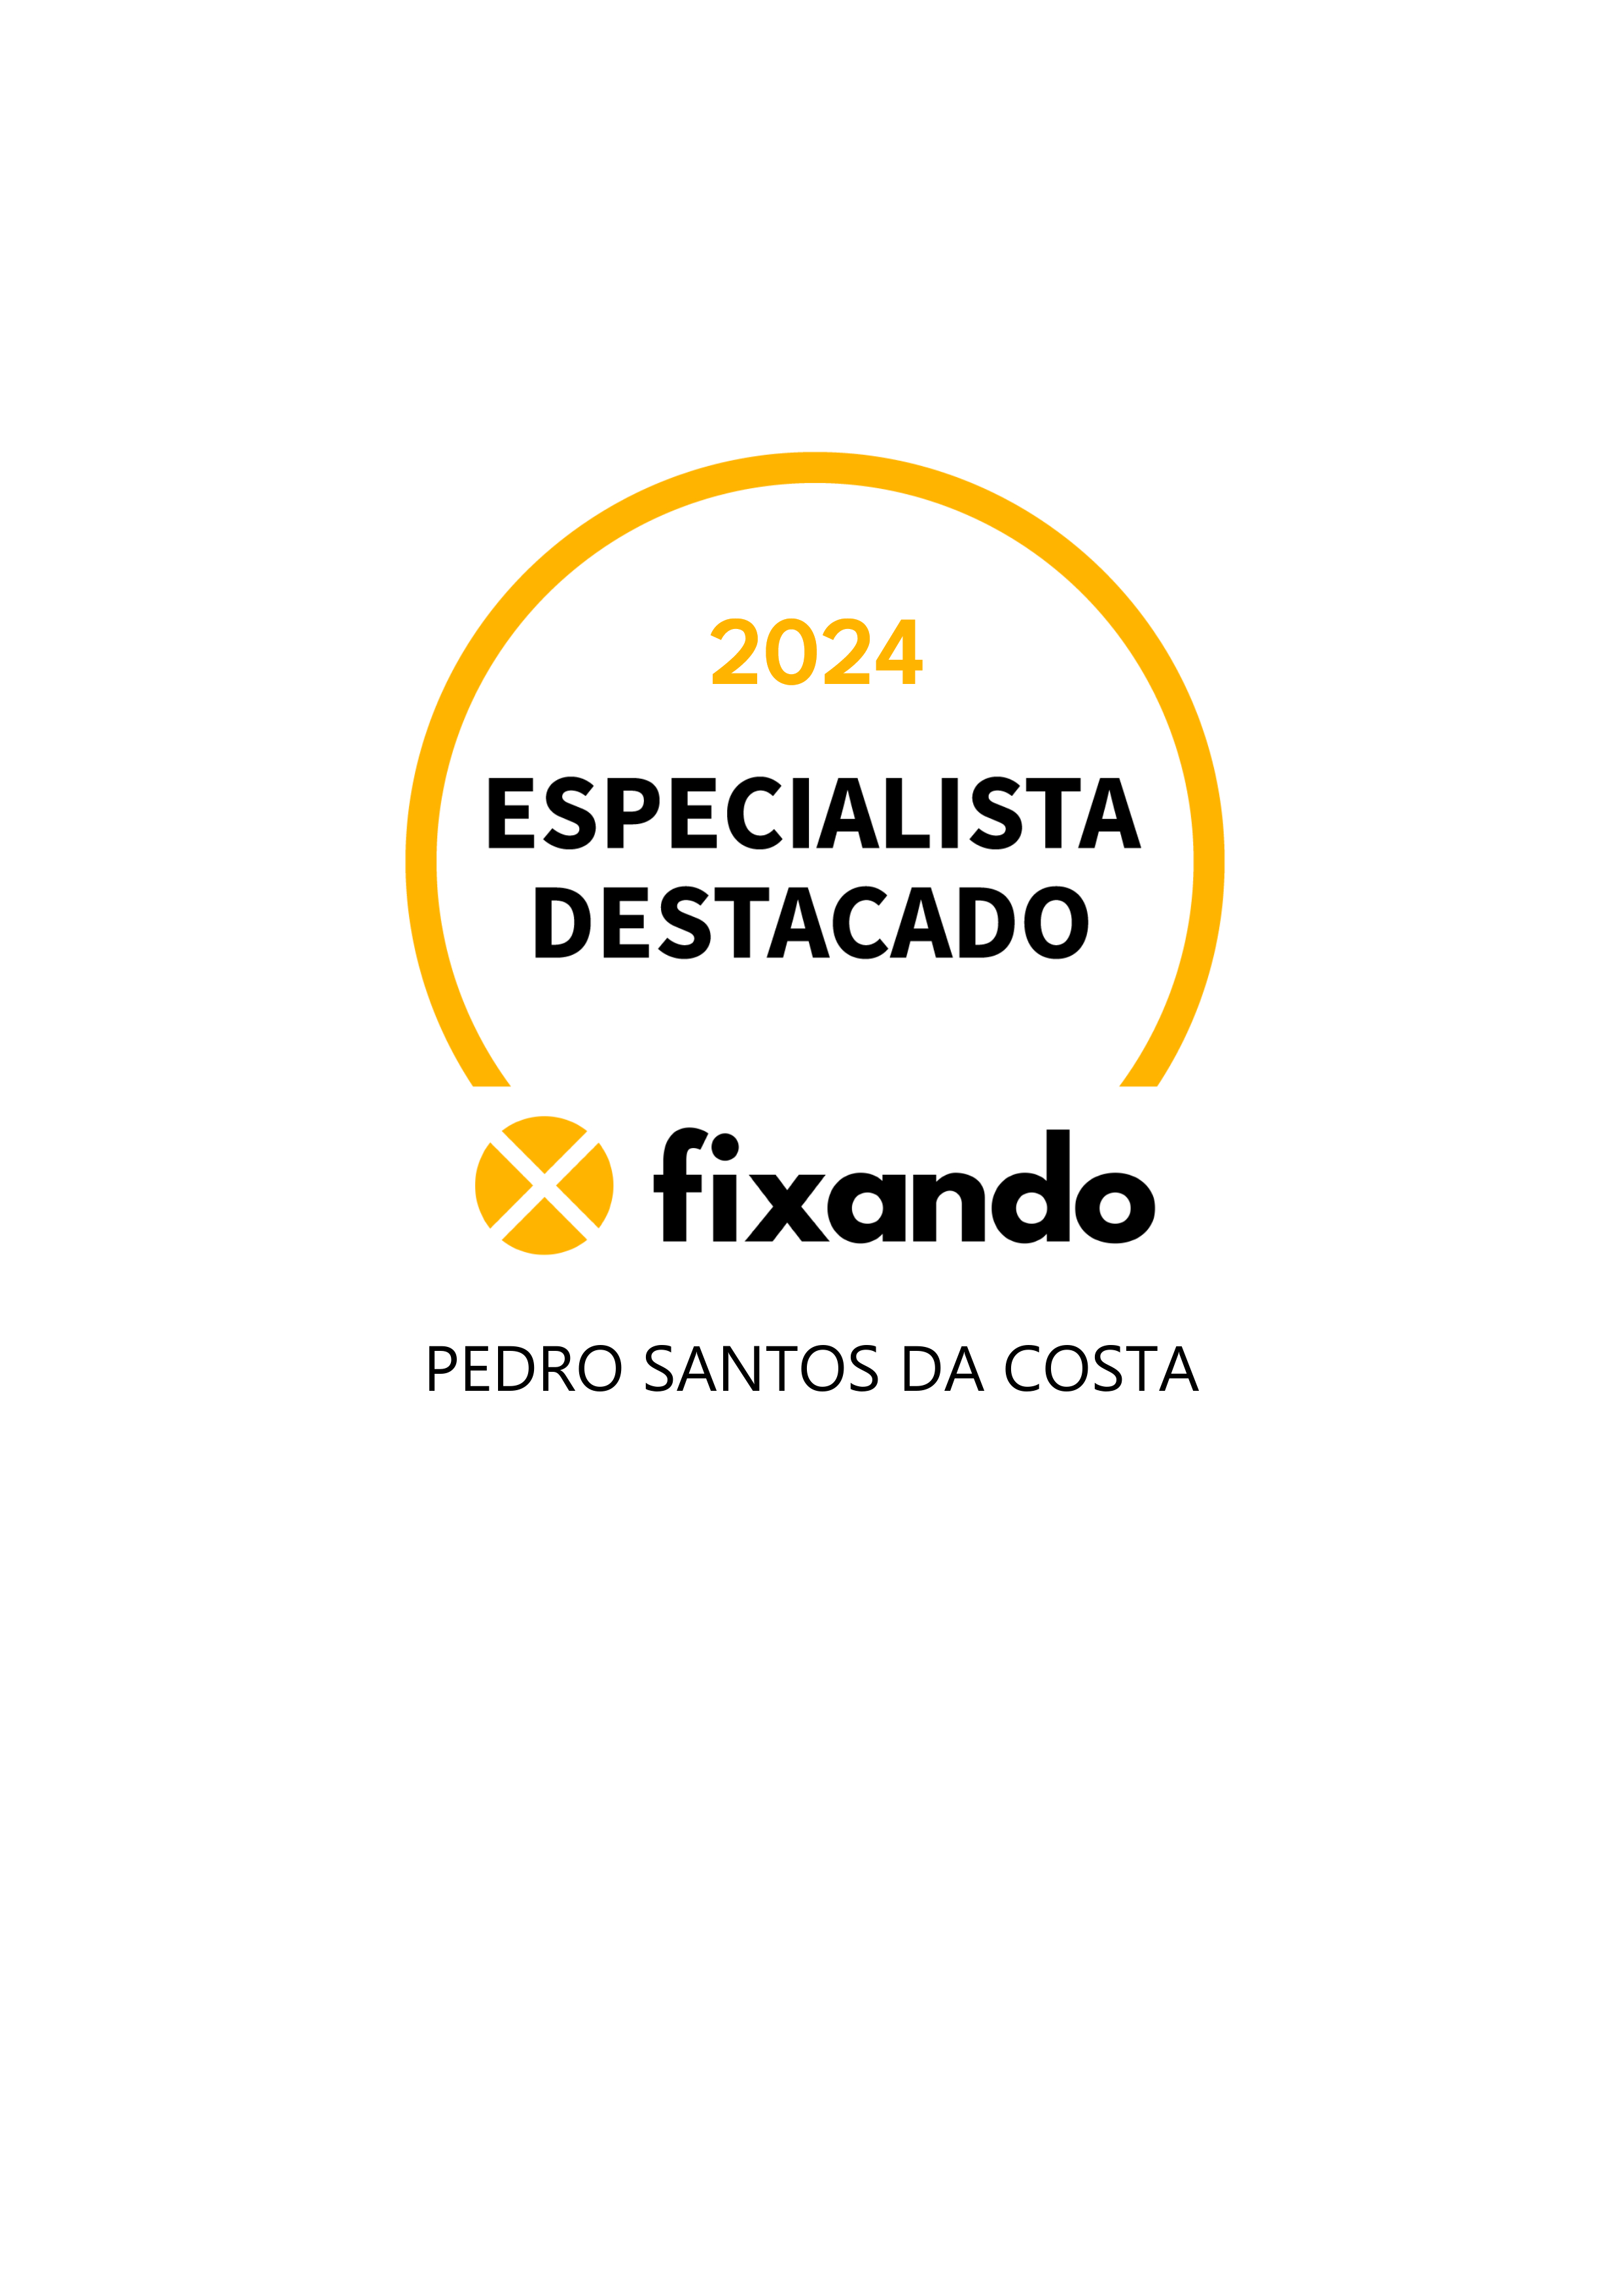 Pedro Santos da Costa - Leiria - Design de Logotipos